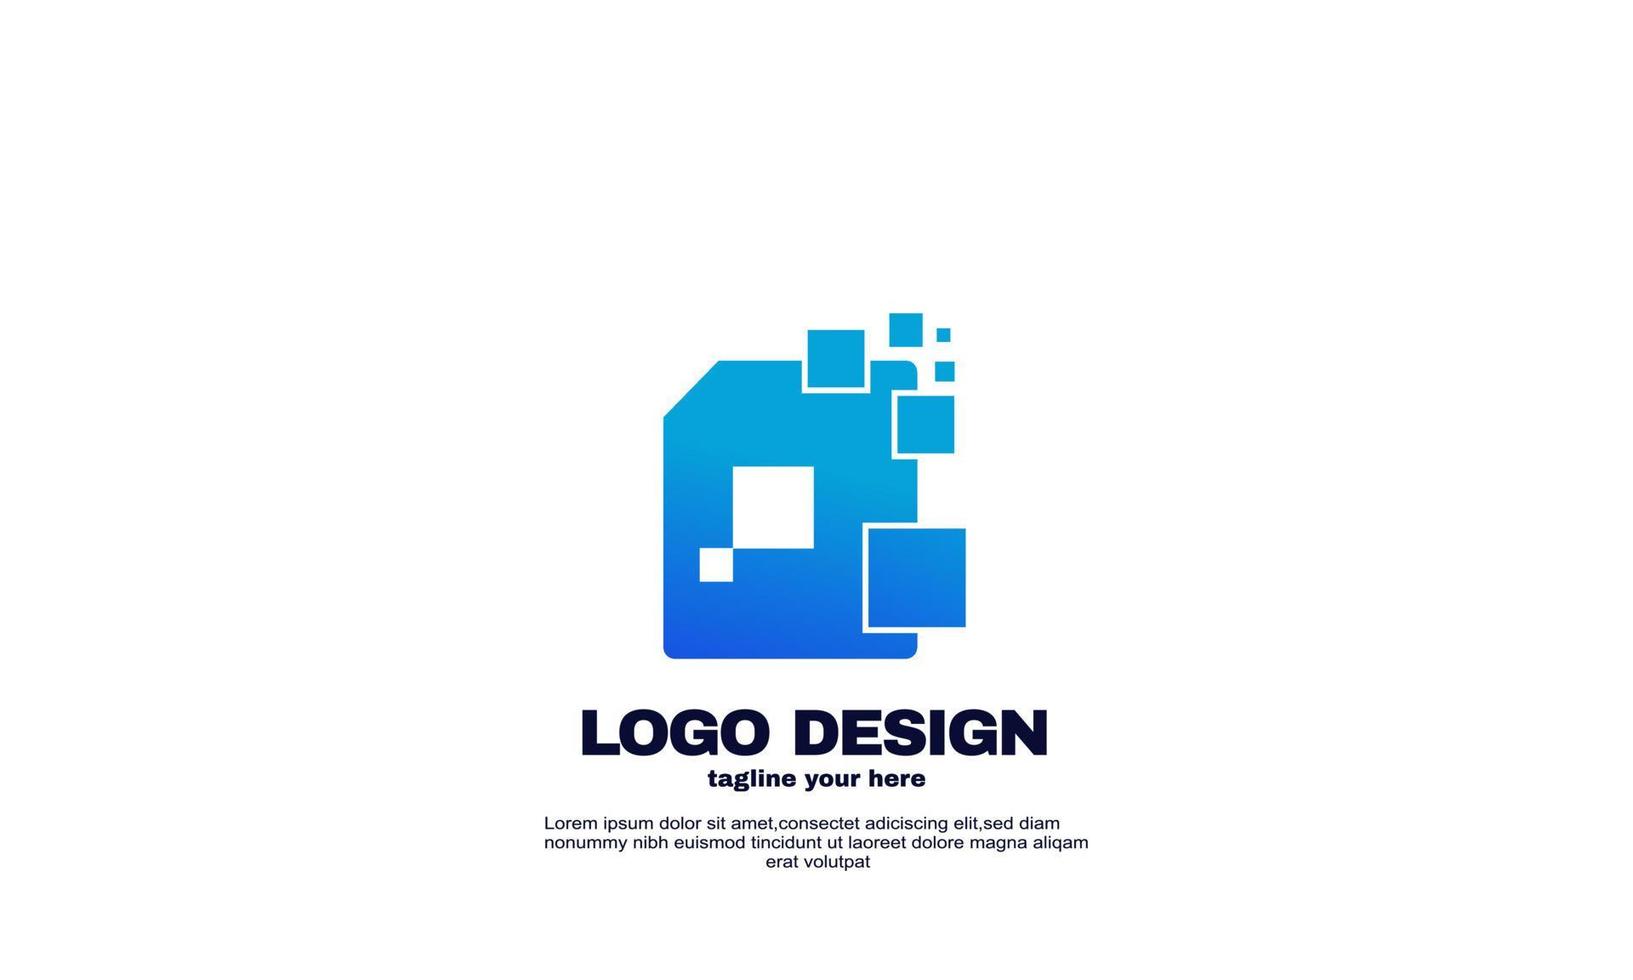 Concepto de diseños de logotipo de documento digital de vector abstracto